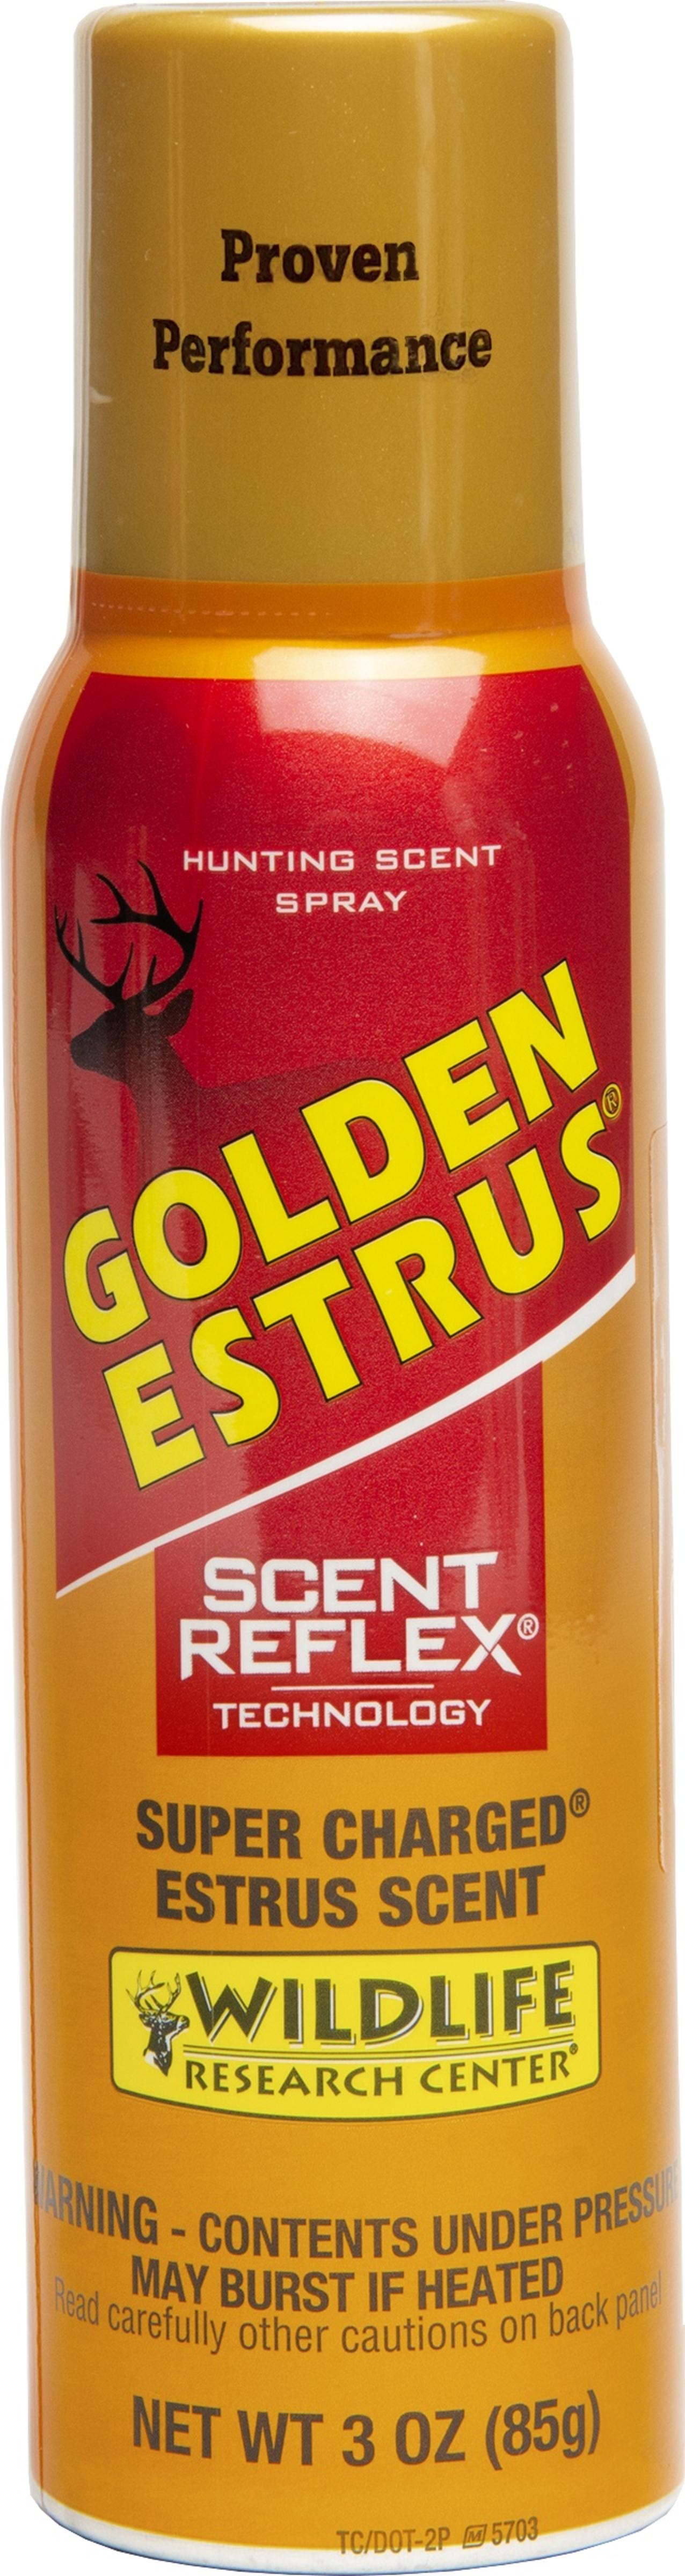 Golden Estrus® Spray With Scent Reflex® Technology